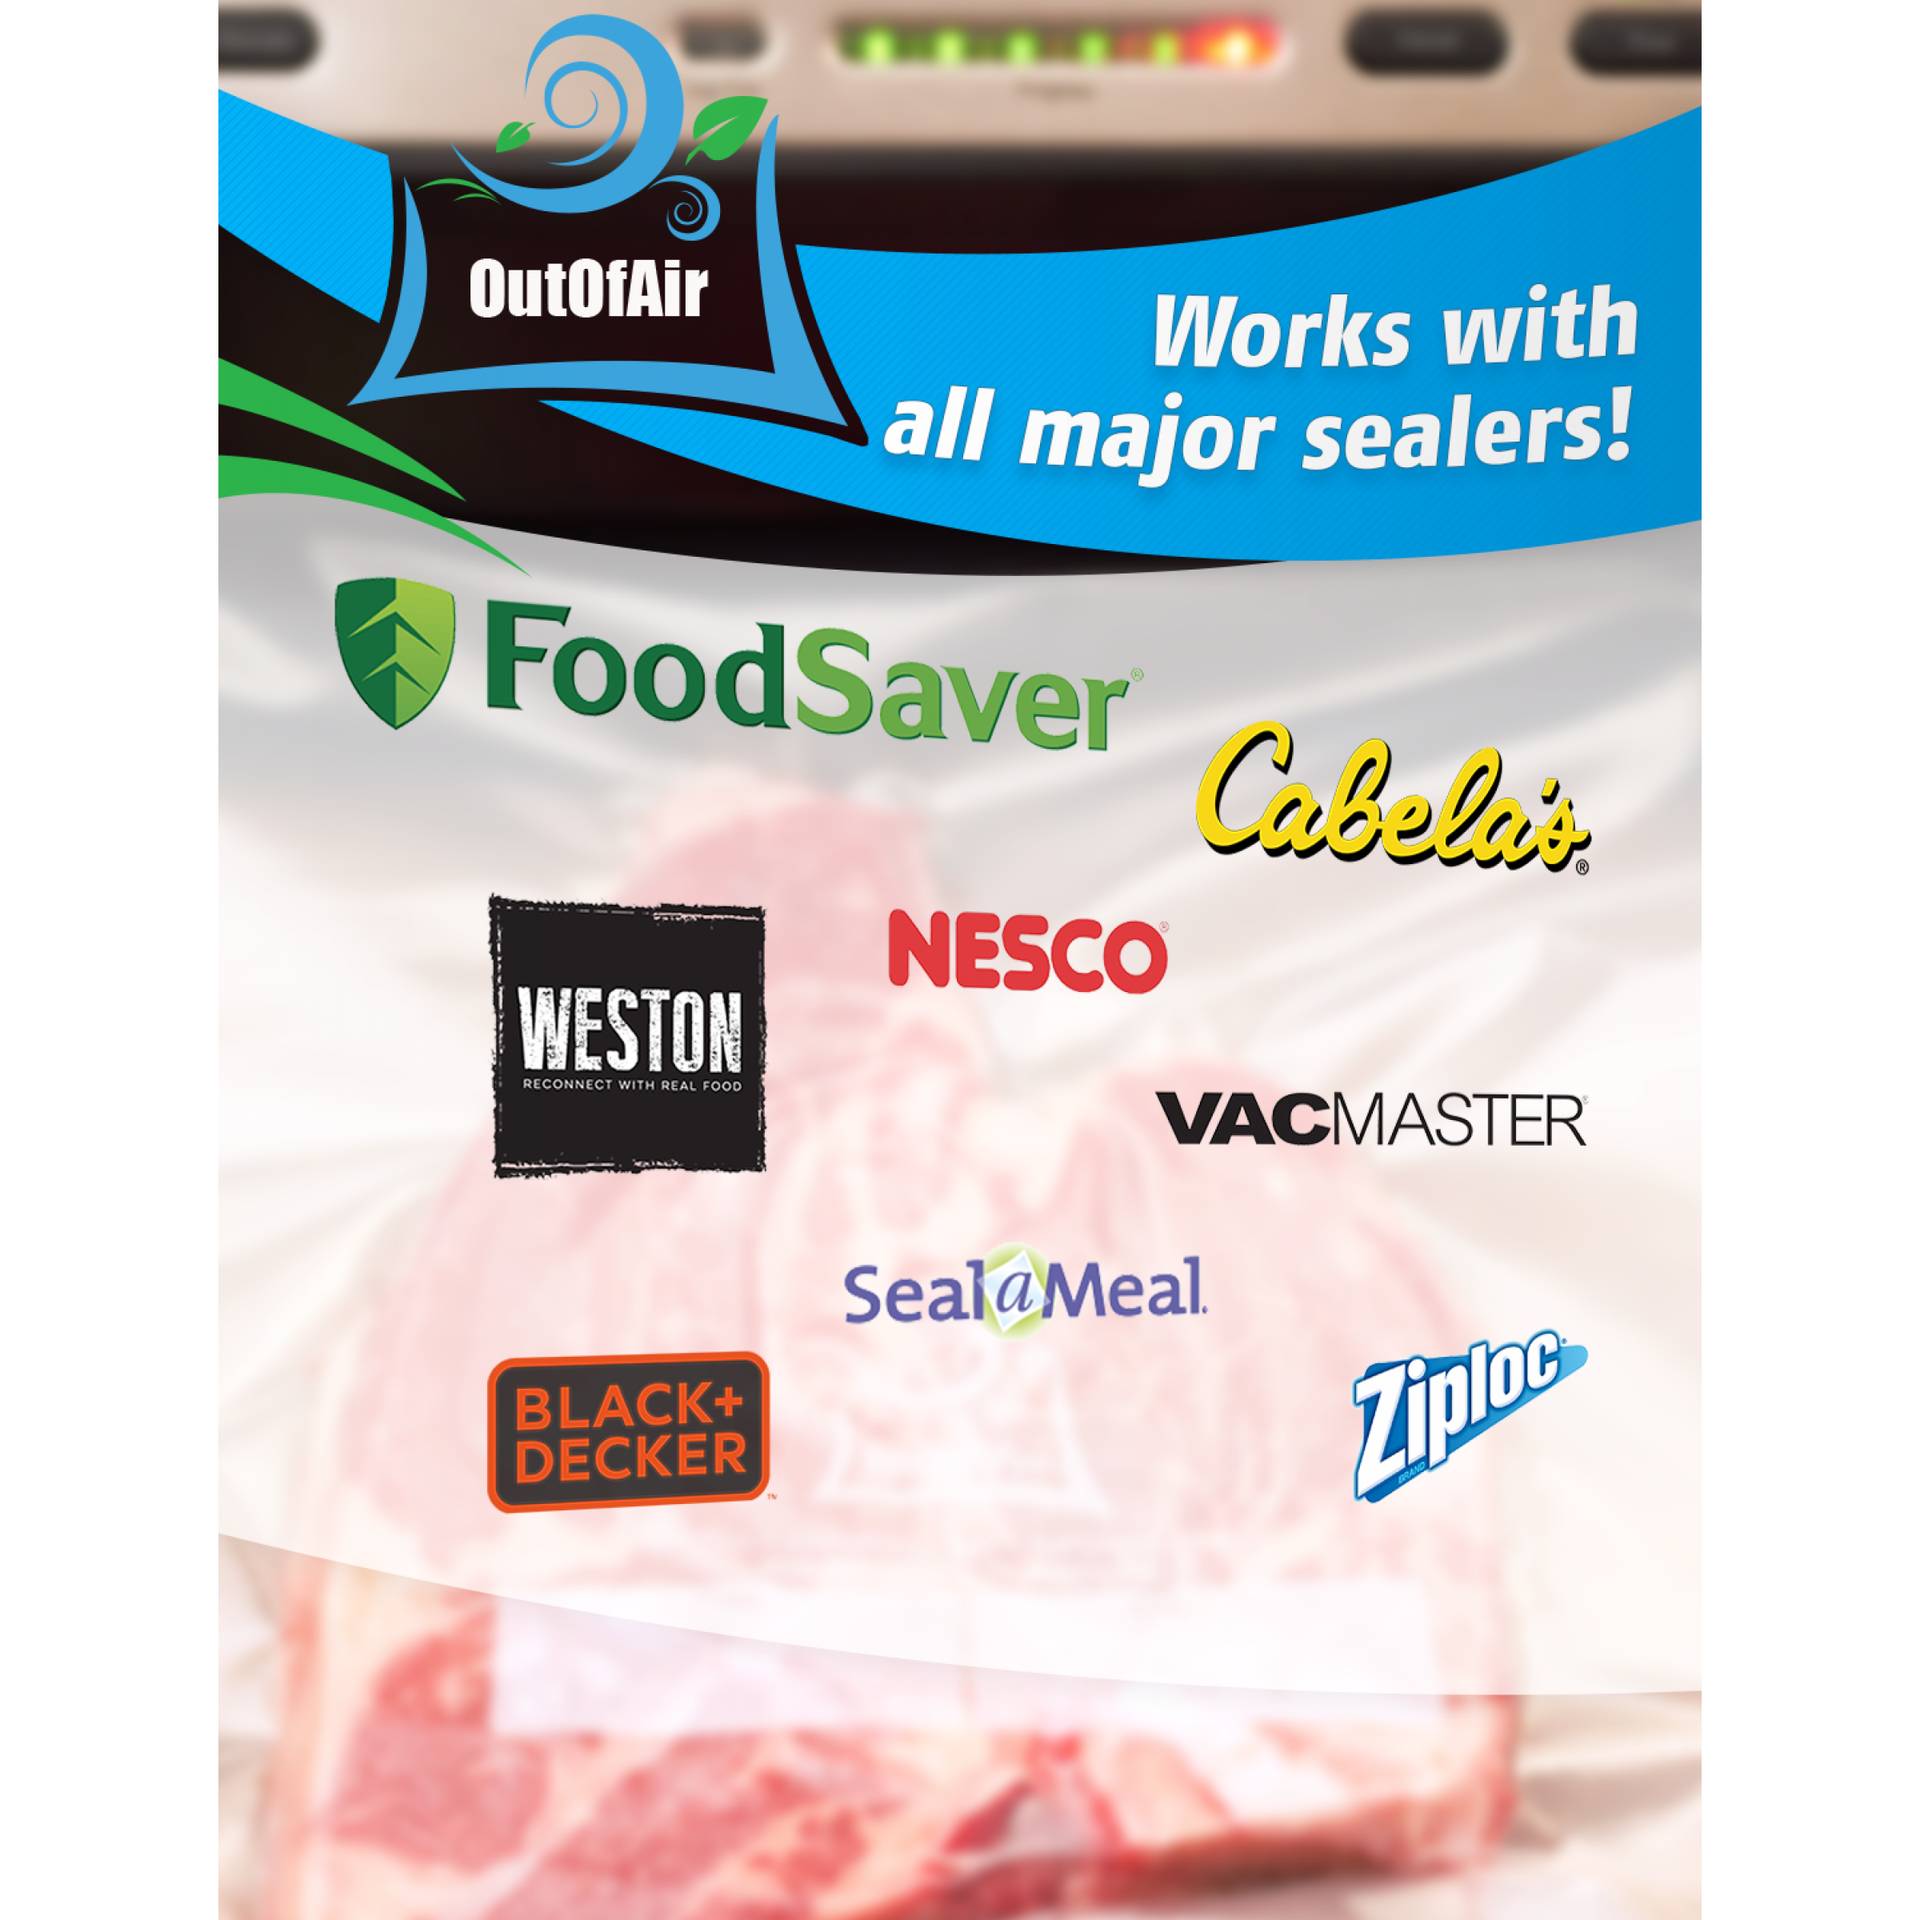 8''x25' Vacuum Sealer Bags for Freezer Food Saver (2 Rolls), Vacuum Seal  Bag Rolls Food Storage Bags